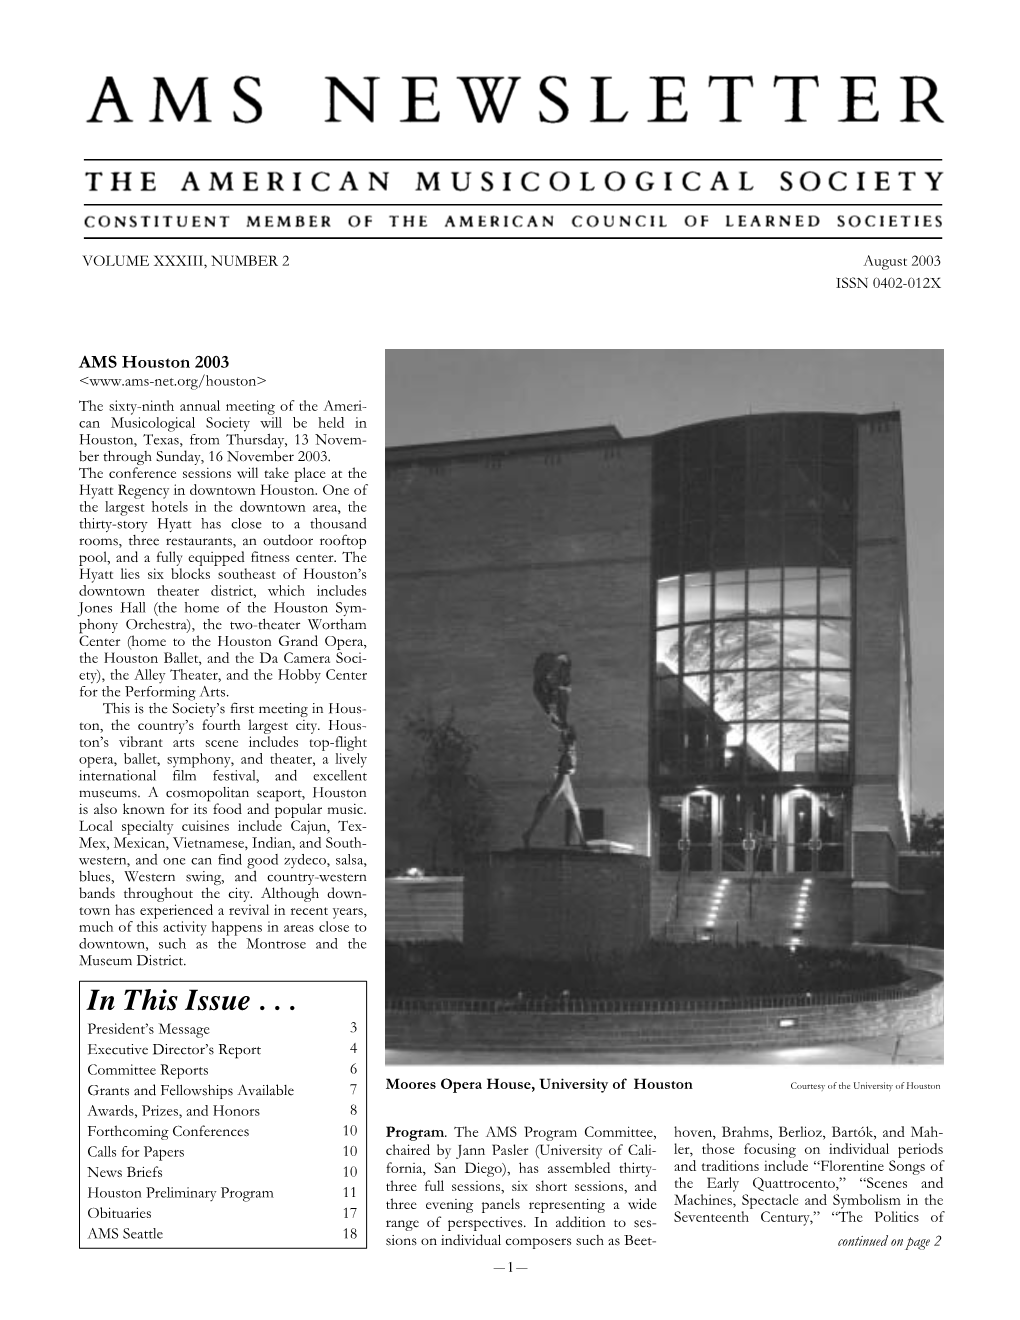 AMS Newsletter August 2003